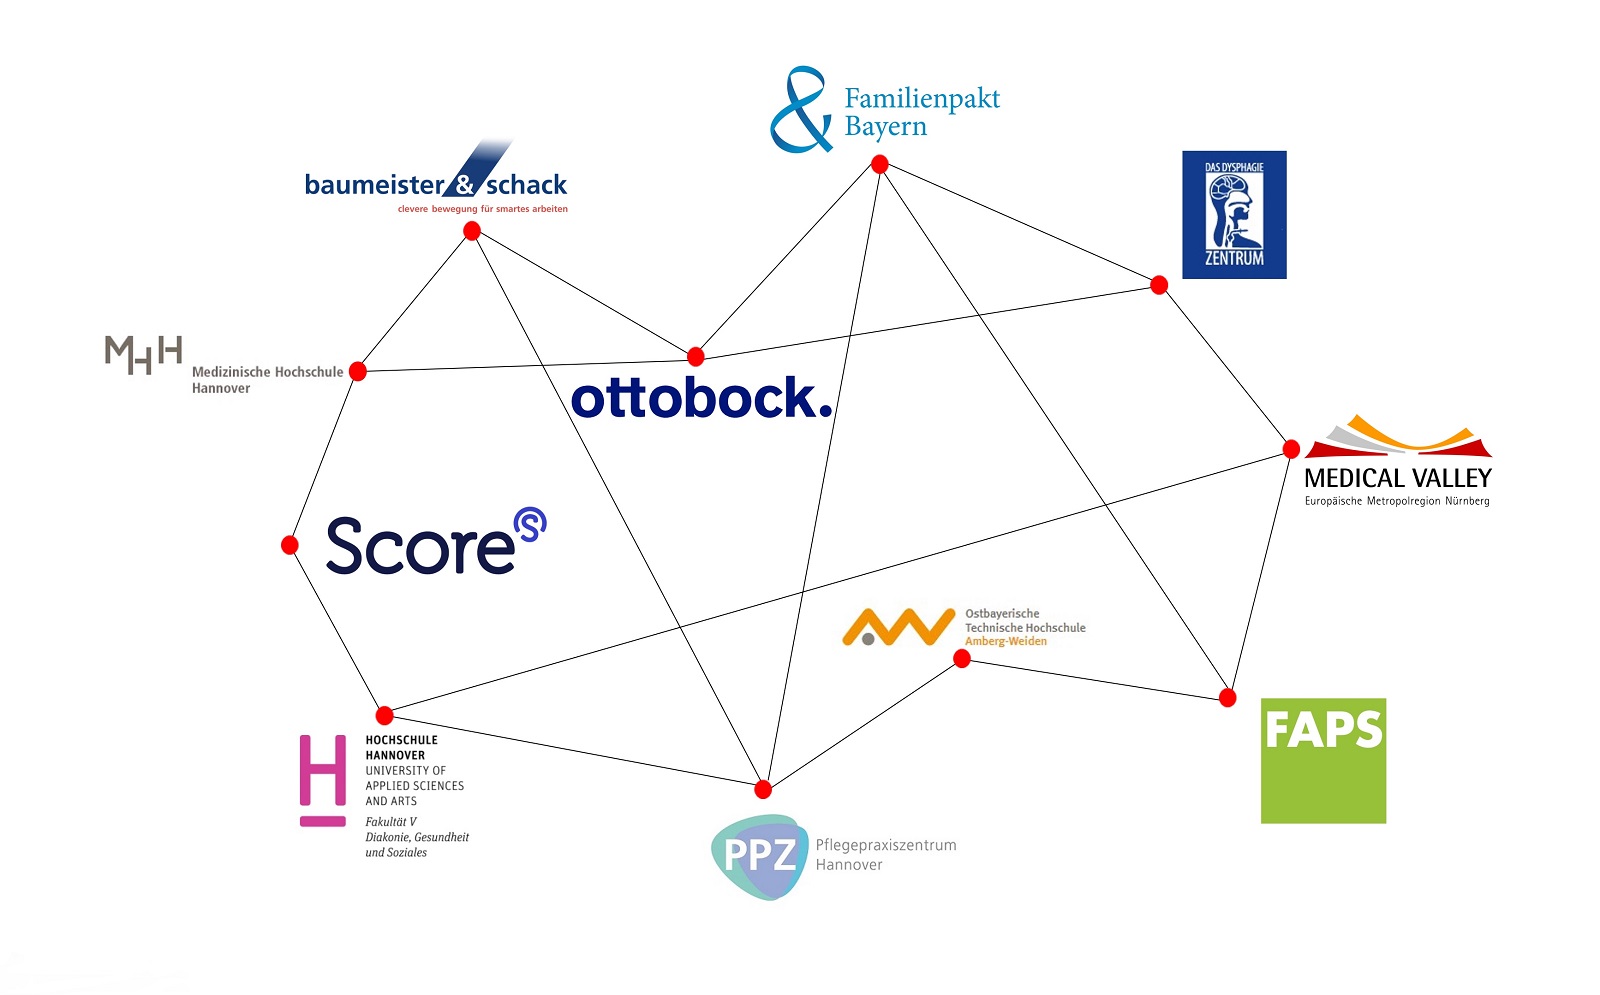 Das Bild zeigt die Logos der Partner von Ergo-Tec aus Wirtschaft, Pflege und Forschung, als Netzwerk der Firma.